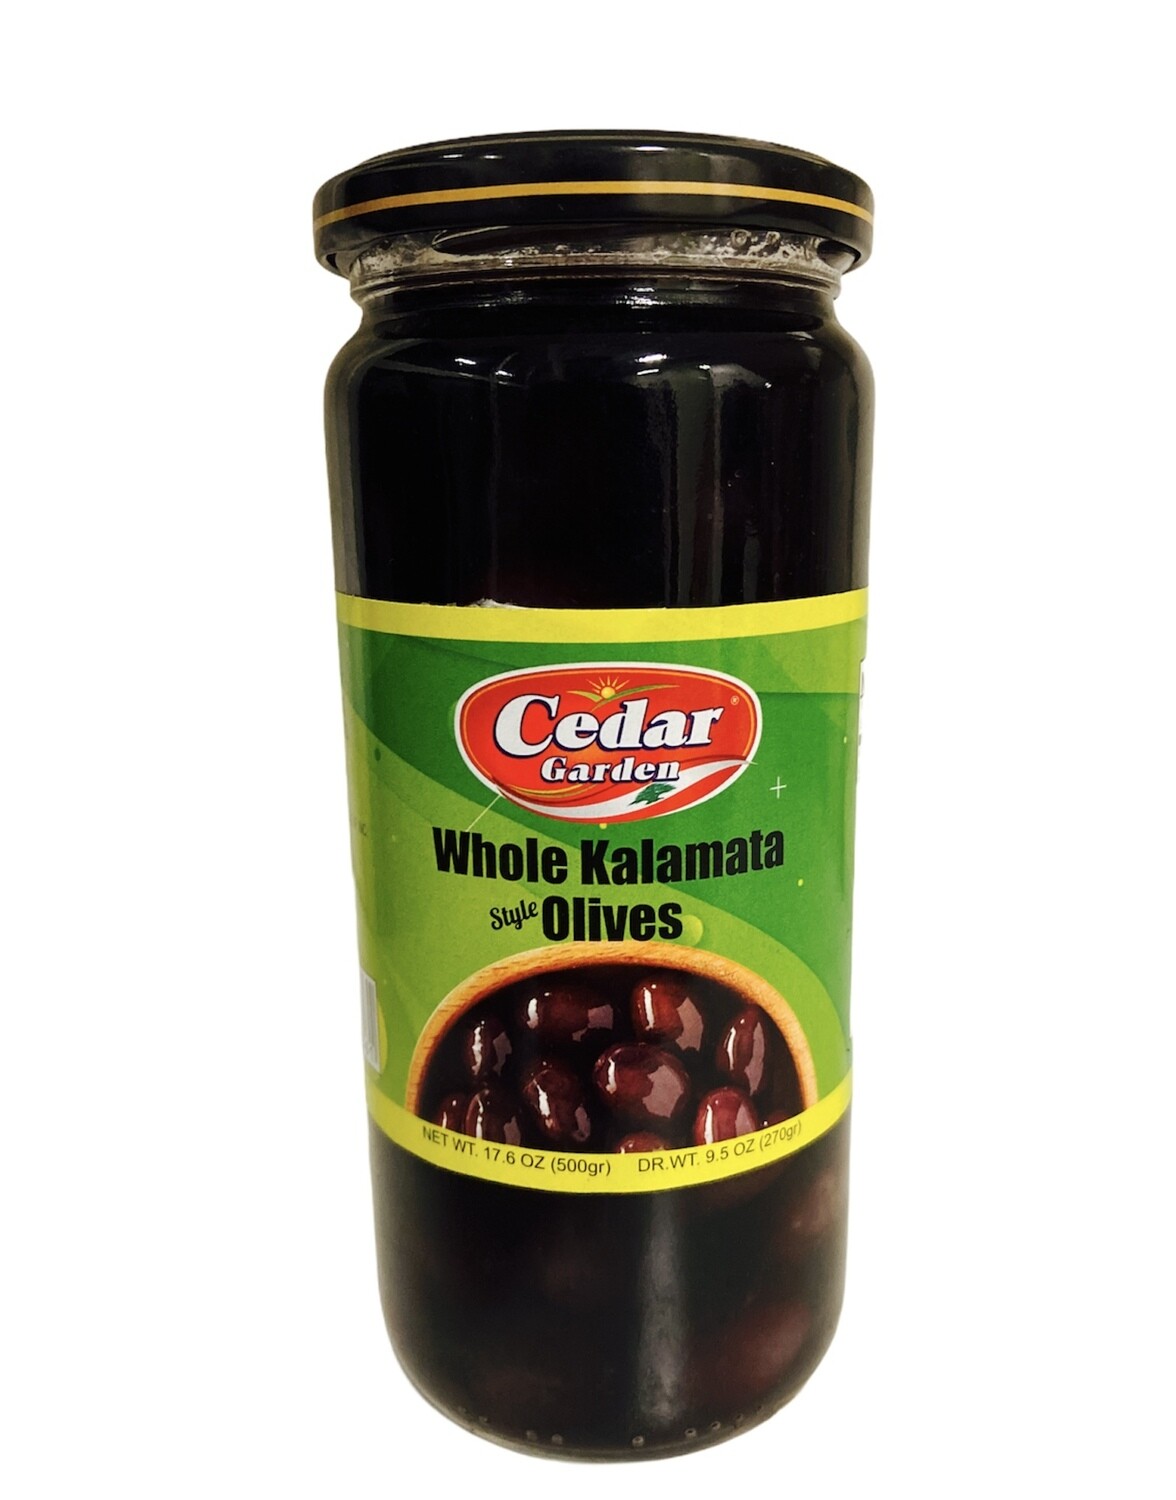 Cedar Garden Whole Kalamata Olives